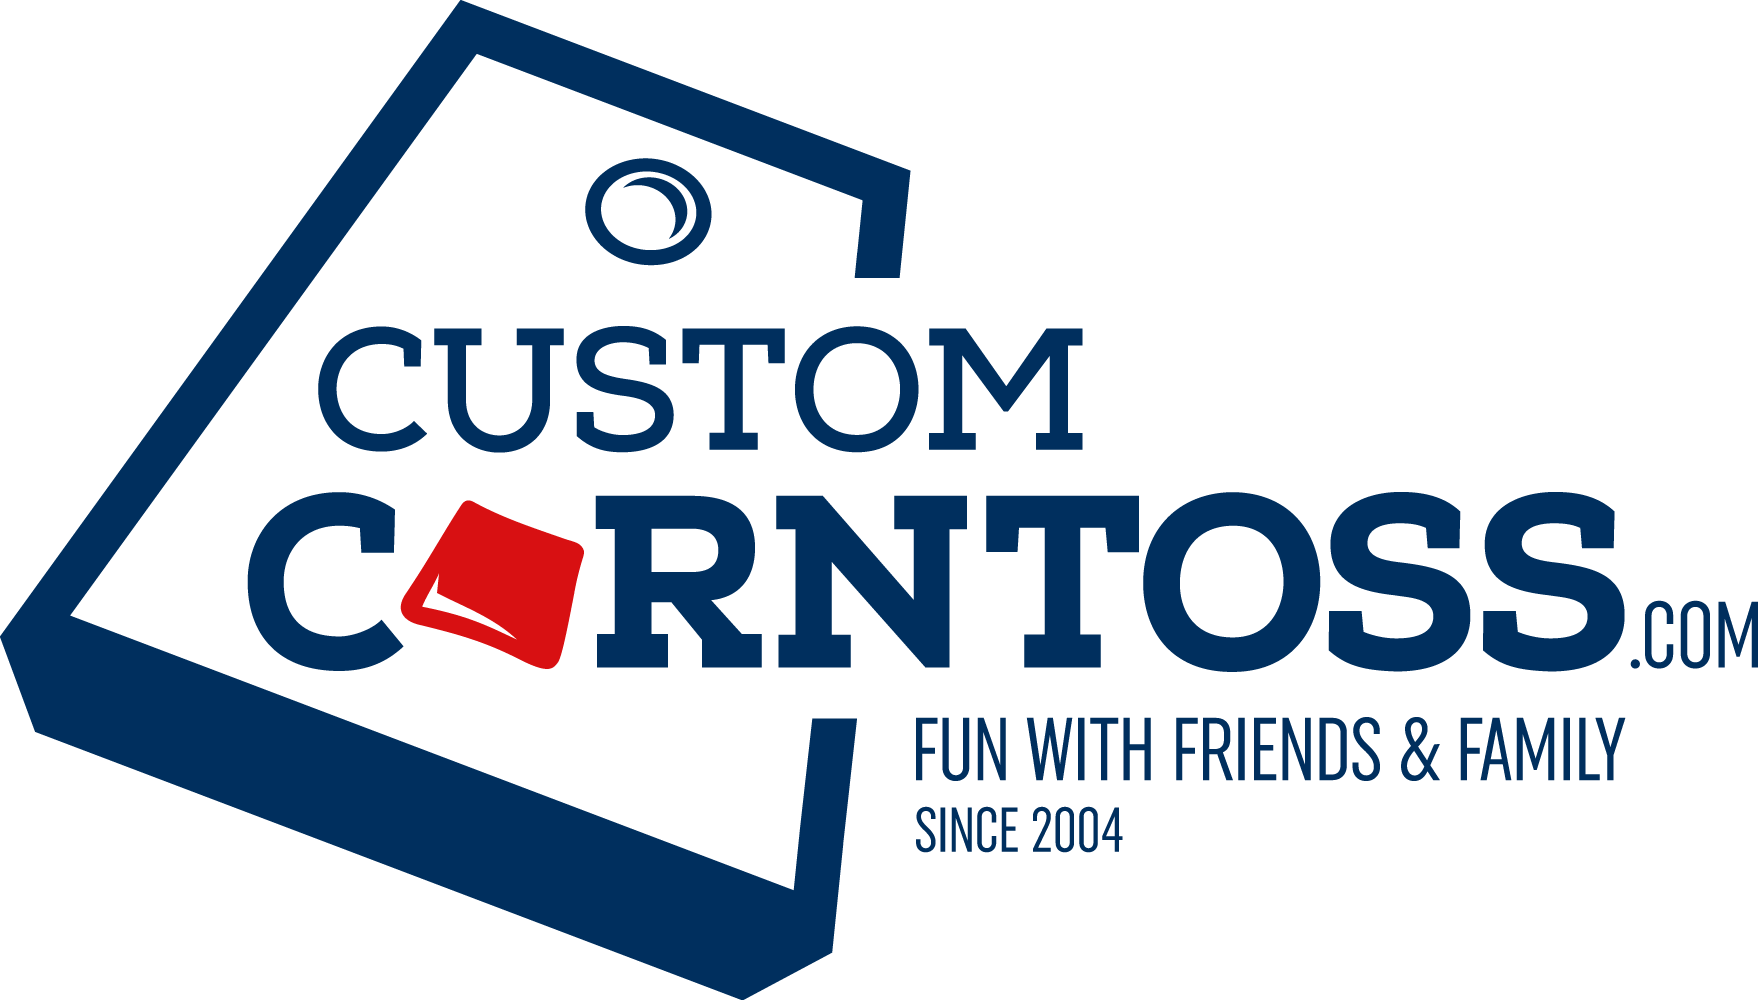 (c) Customcorntoss.com